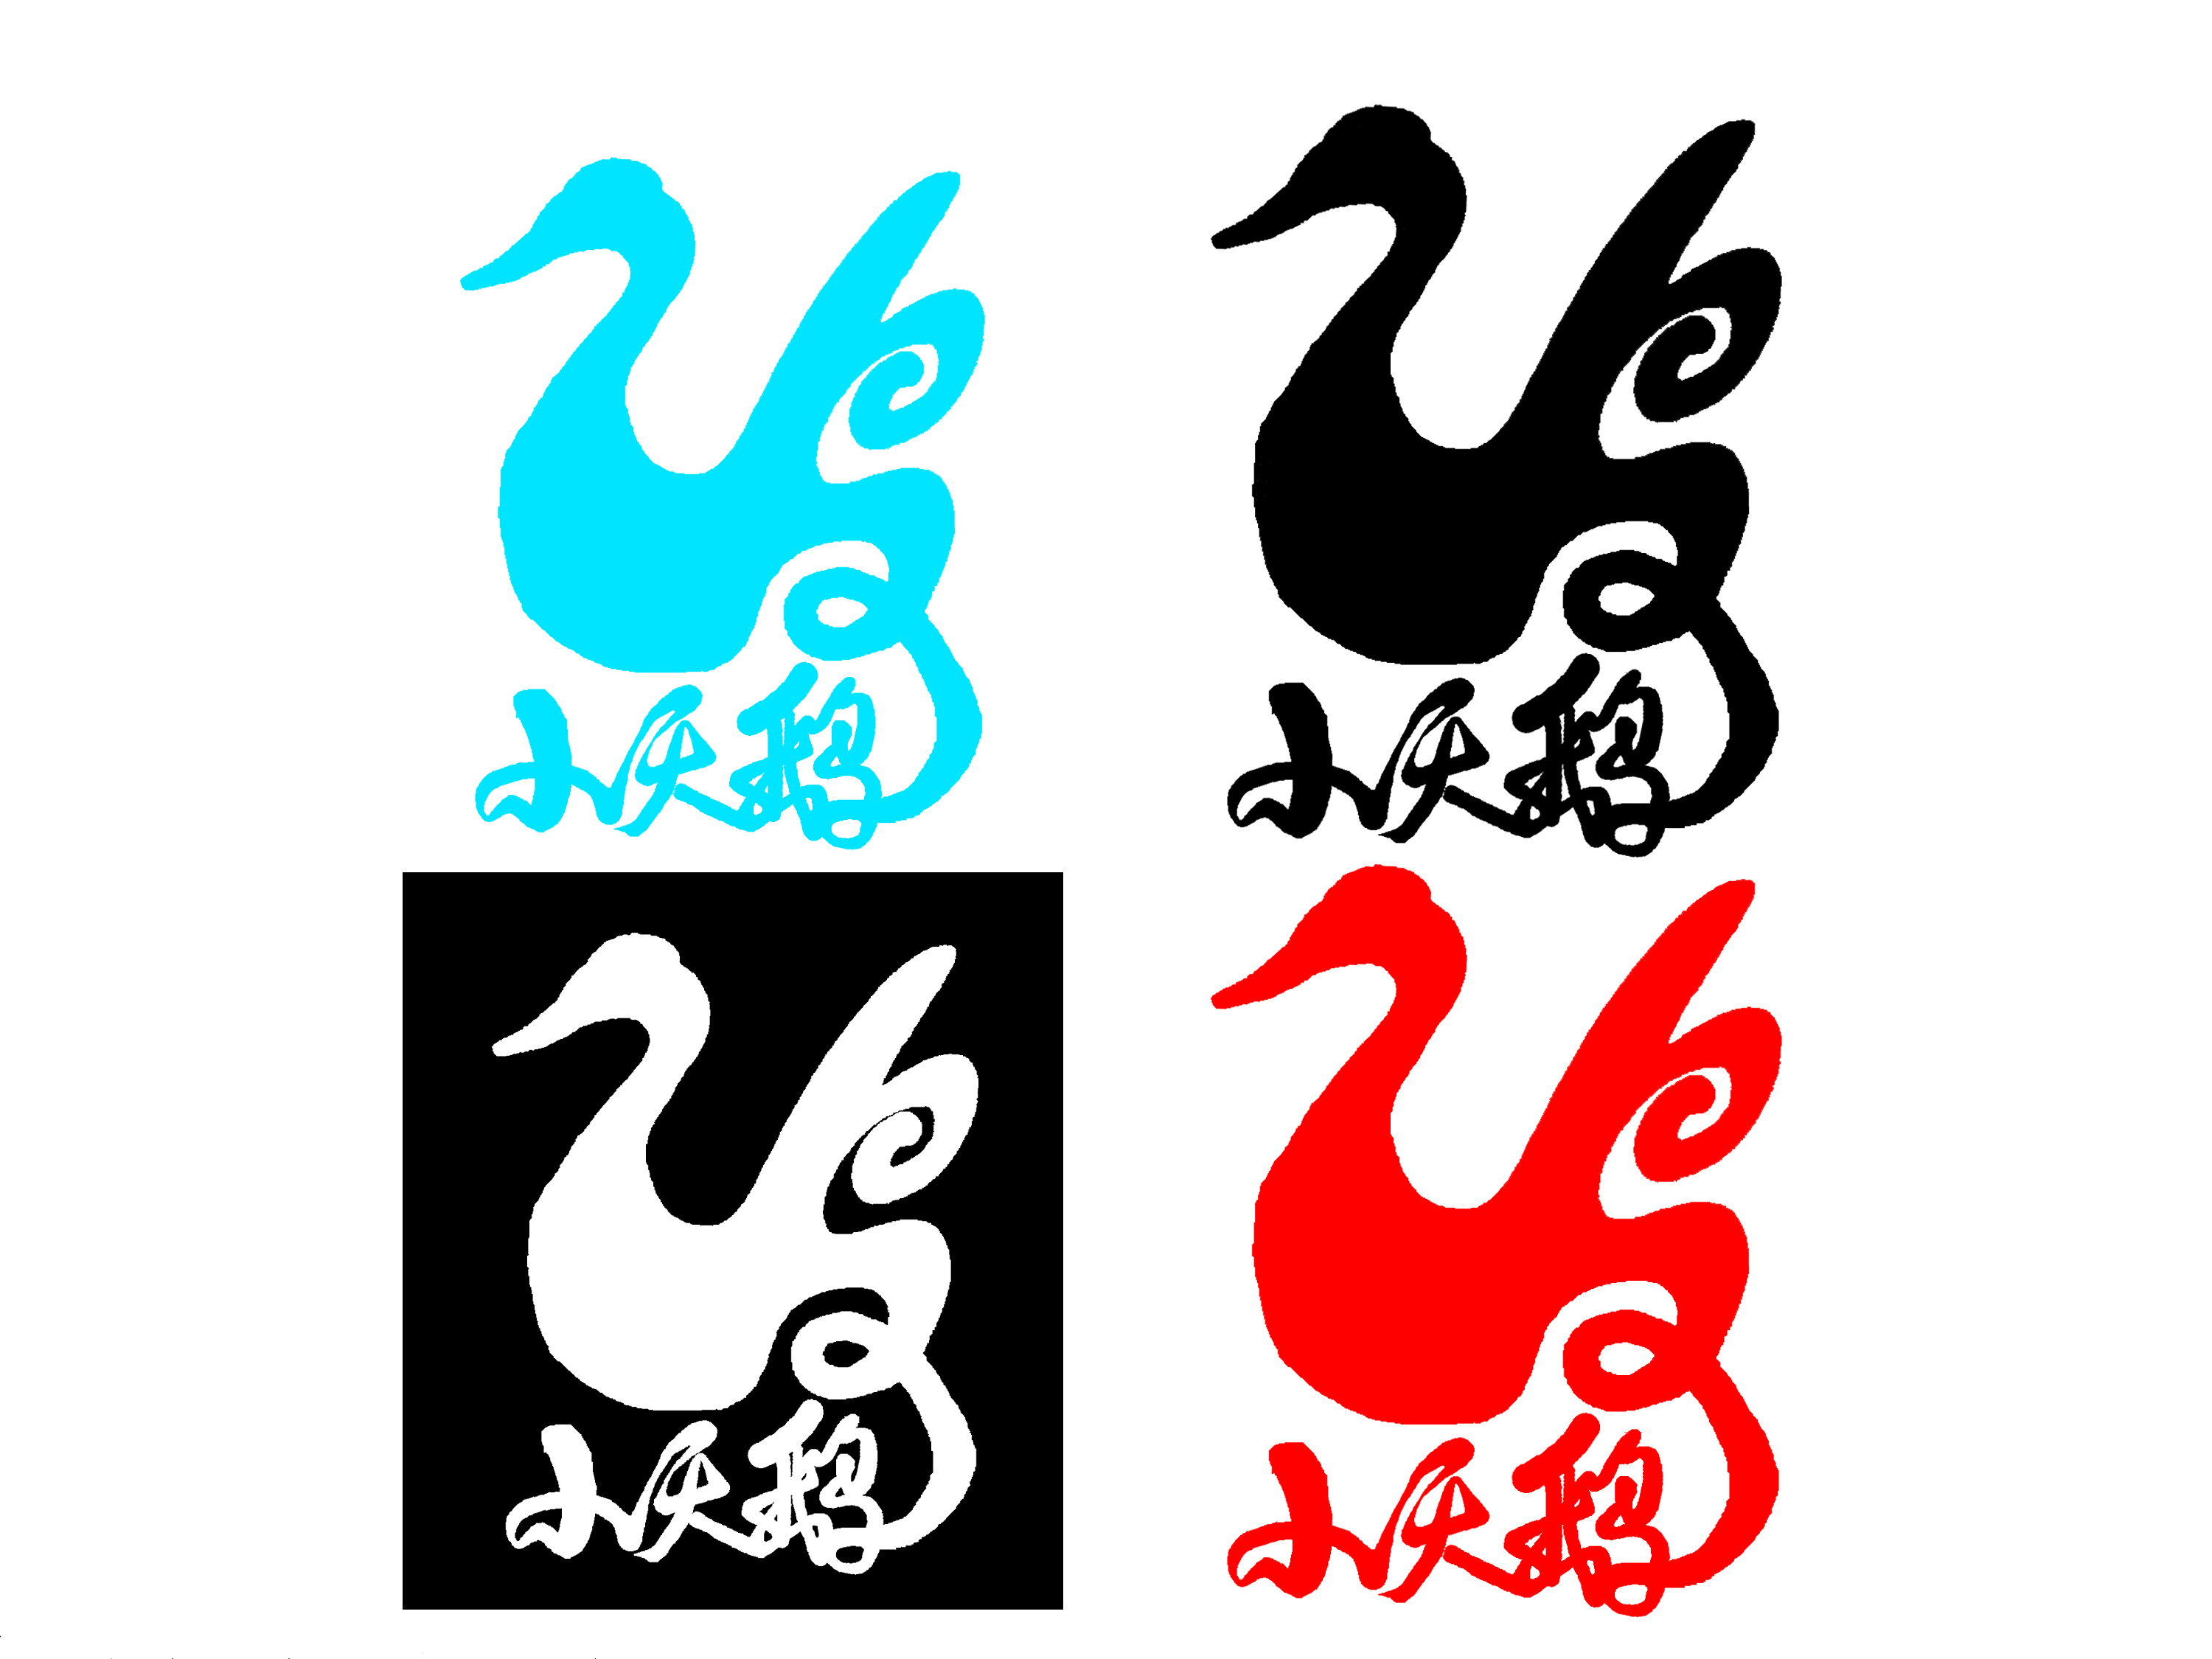 小天鹅logo